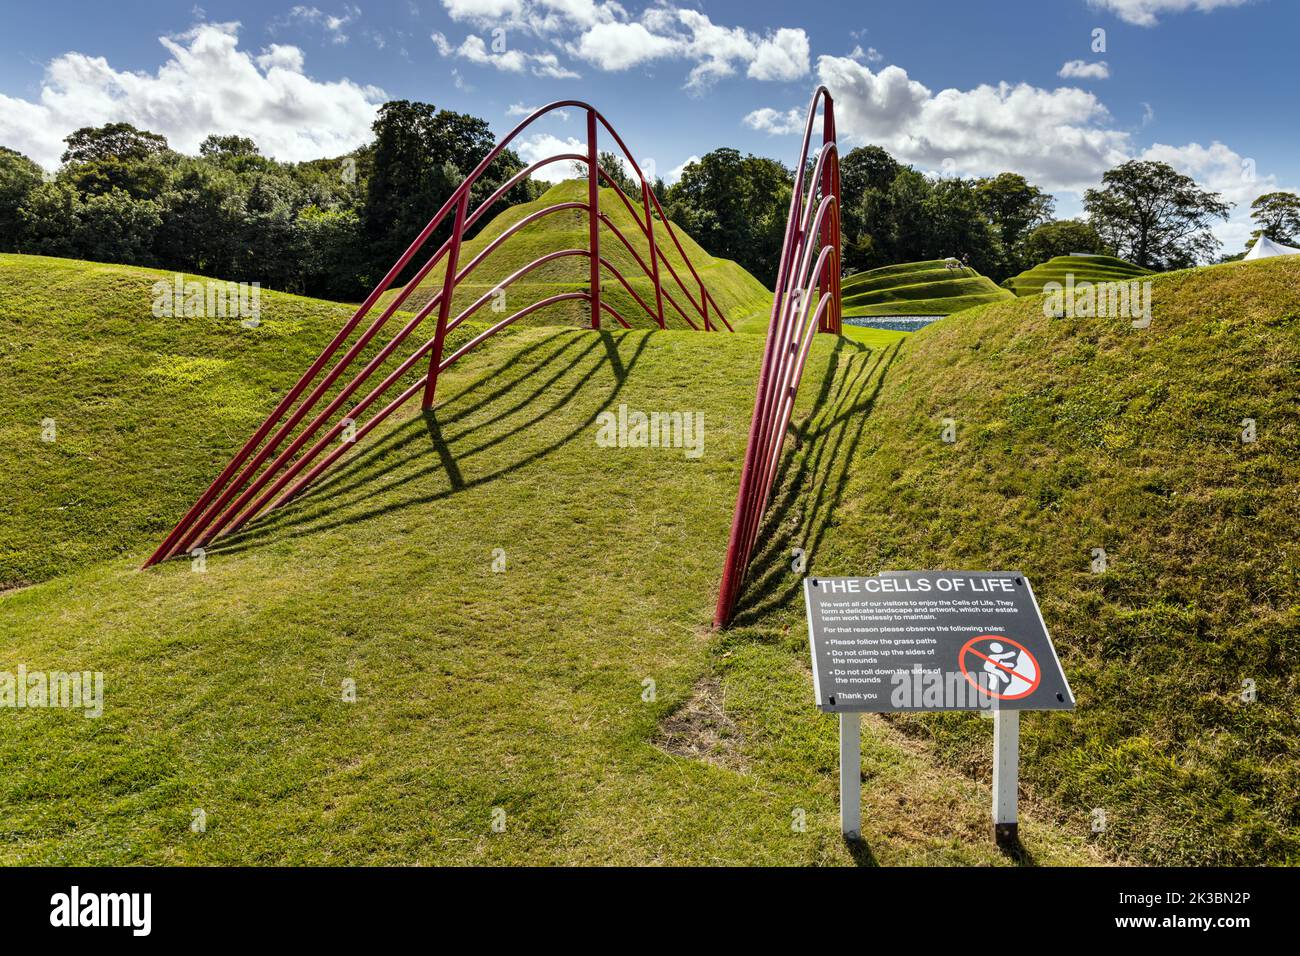 Landformen mit dem Titel „Zellen des Lebens“ von Bildhauer Charles Jencks, Jupiter Artland, Wilkieston, Edinburgh, West Lothian, Schottland. Stockfoto